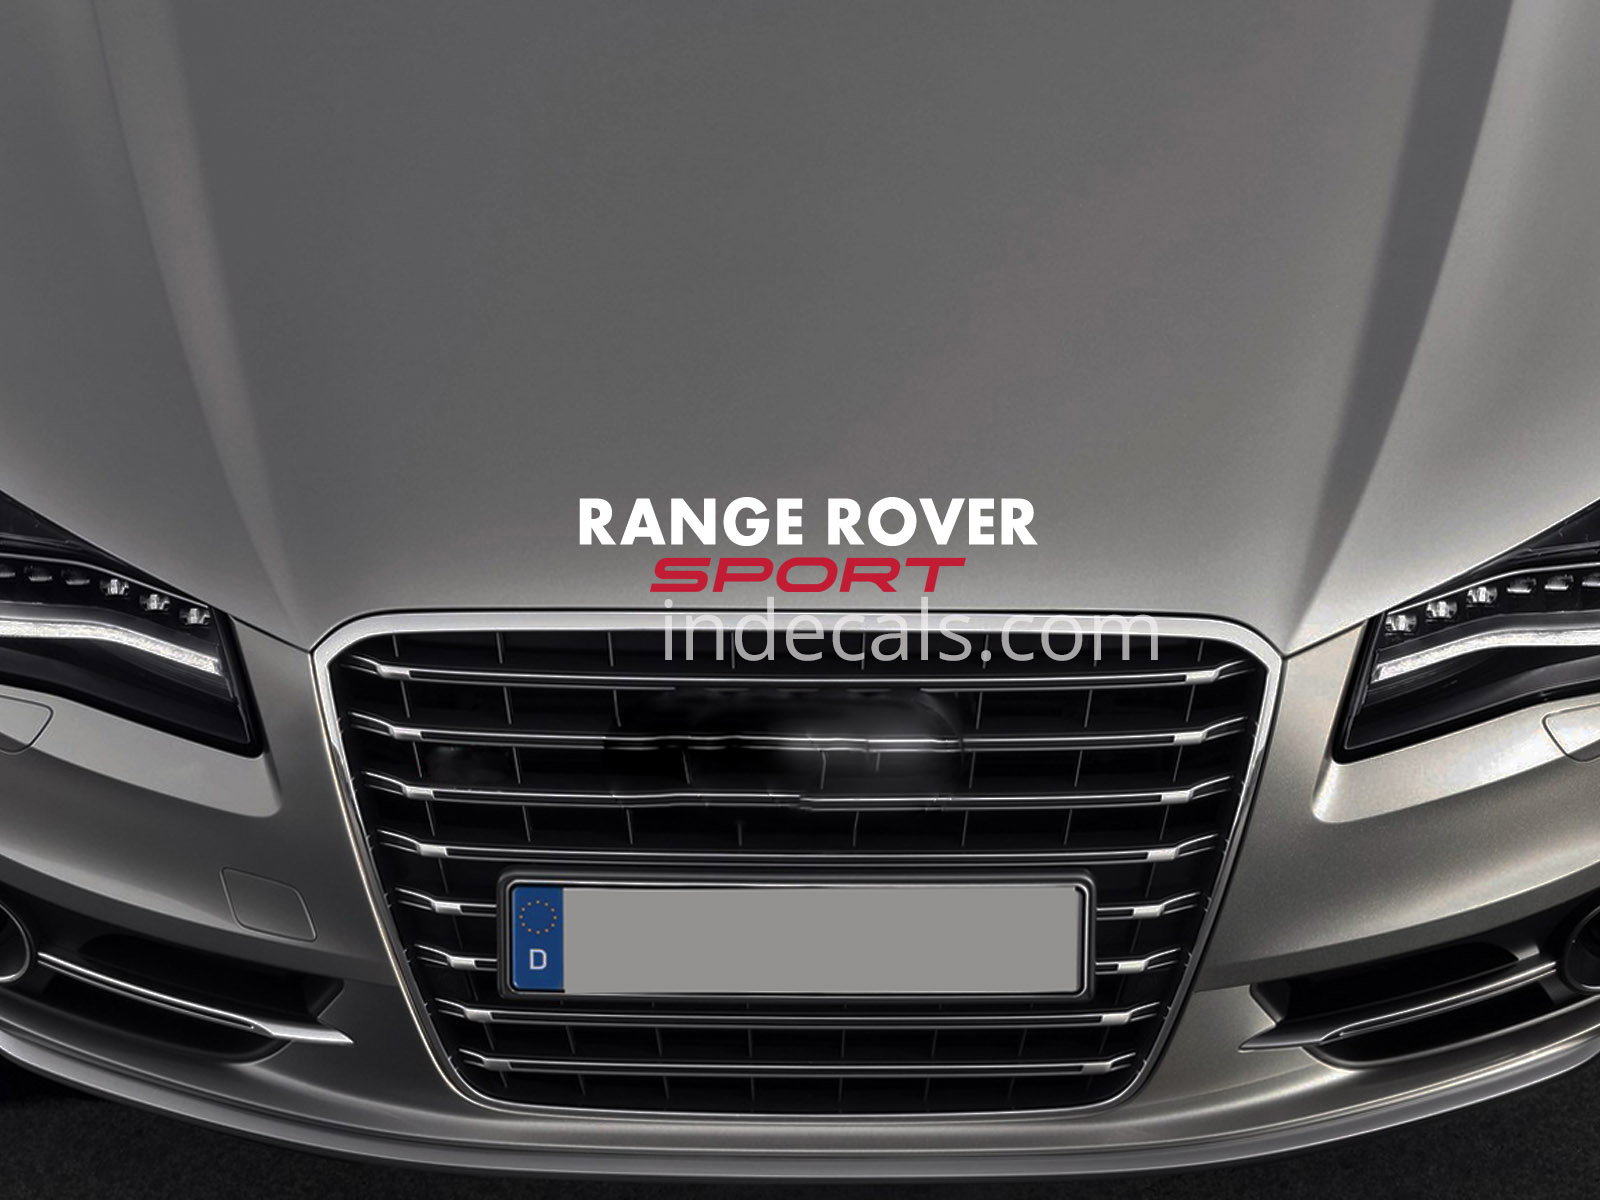 1 x Range Rover Sport Sticker for Bonnet - White & Red